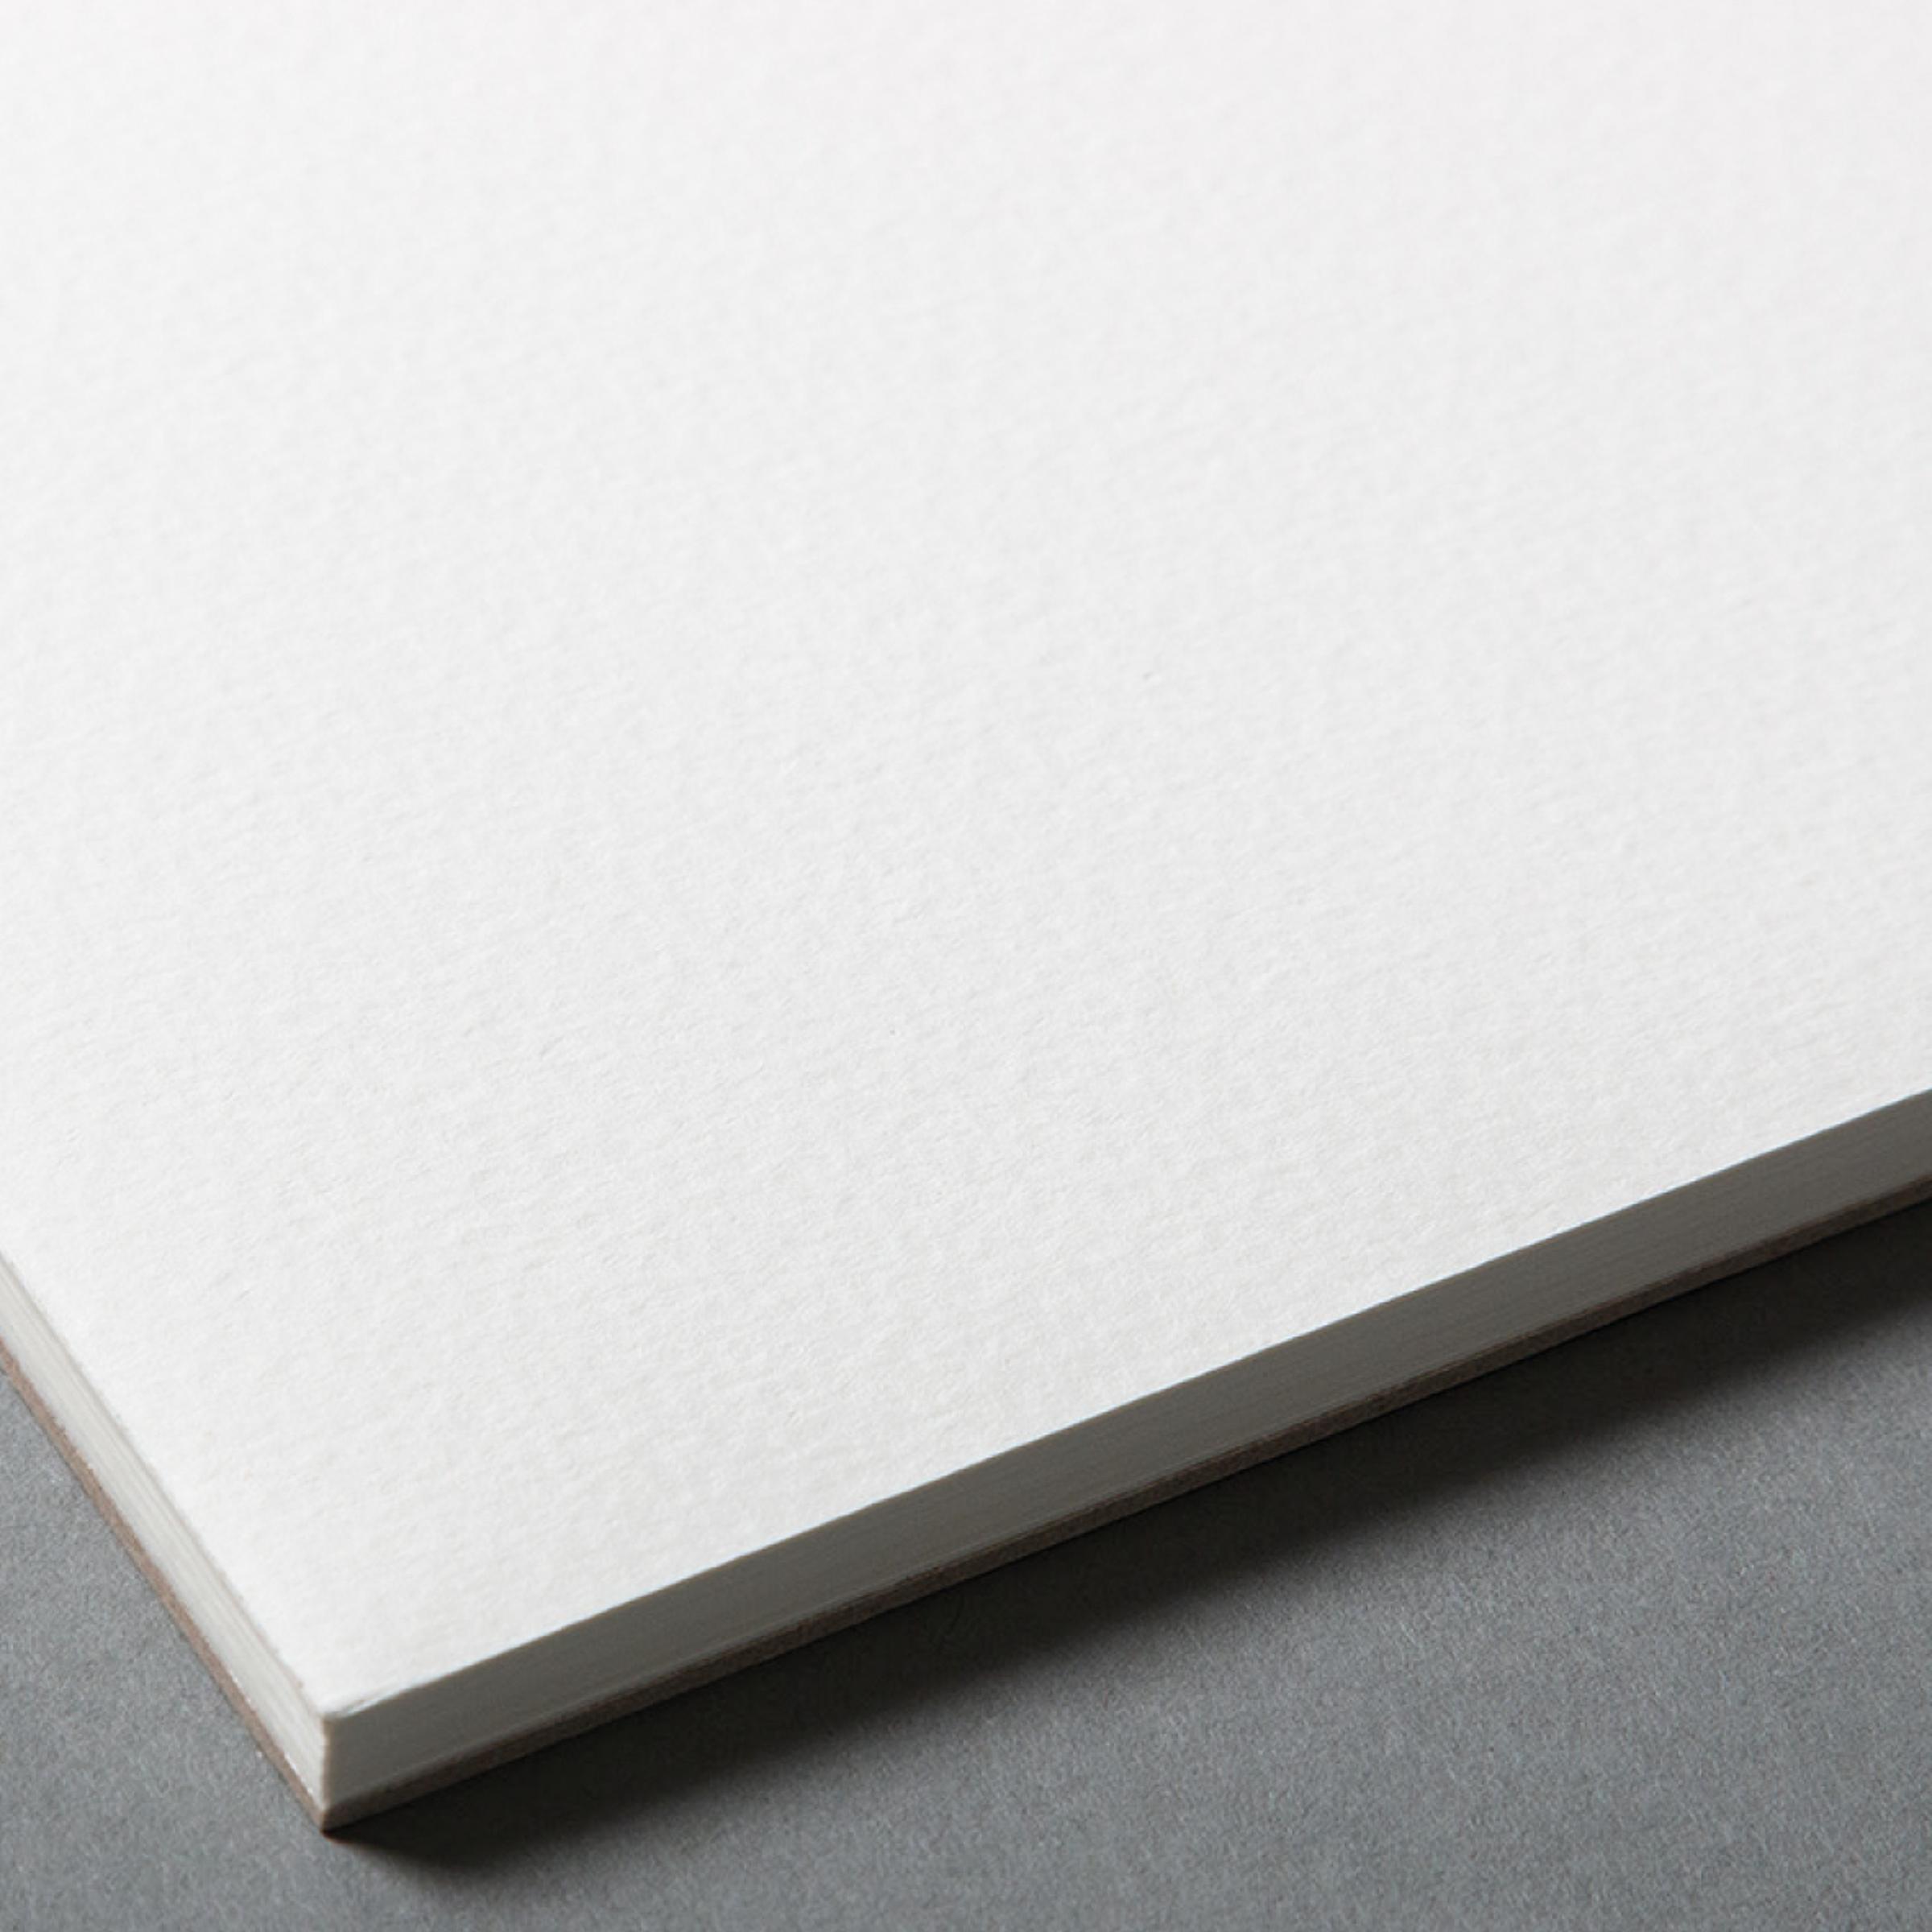 aquarell da capo - art paper pad 360 x 480 mm